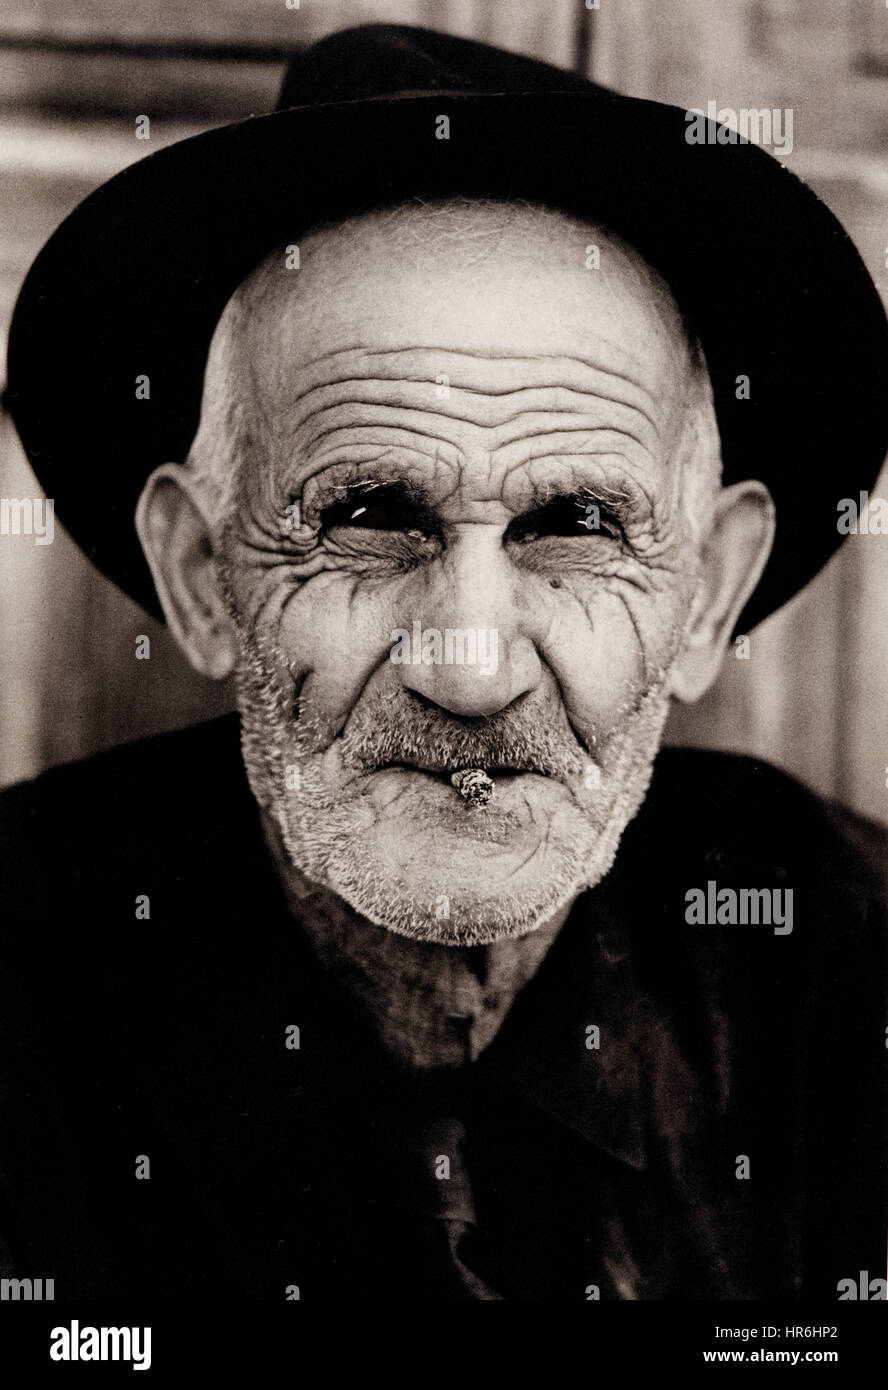 VECCHIO PERSONAGGIO FODERATO B+W ritratto foderato sole tempo battuto volto studio di anziano gentleman con sigarillo indossare un cappello a Vegueta, Las Palmas, Isole Canarie Spagna Foto Stock